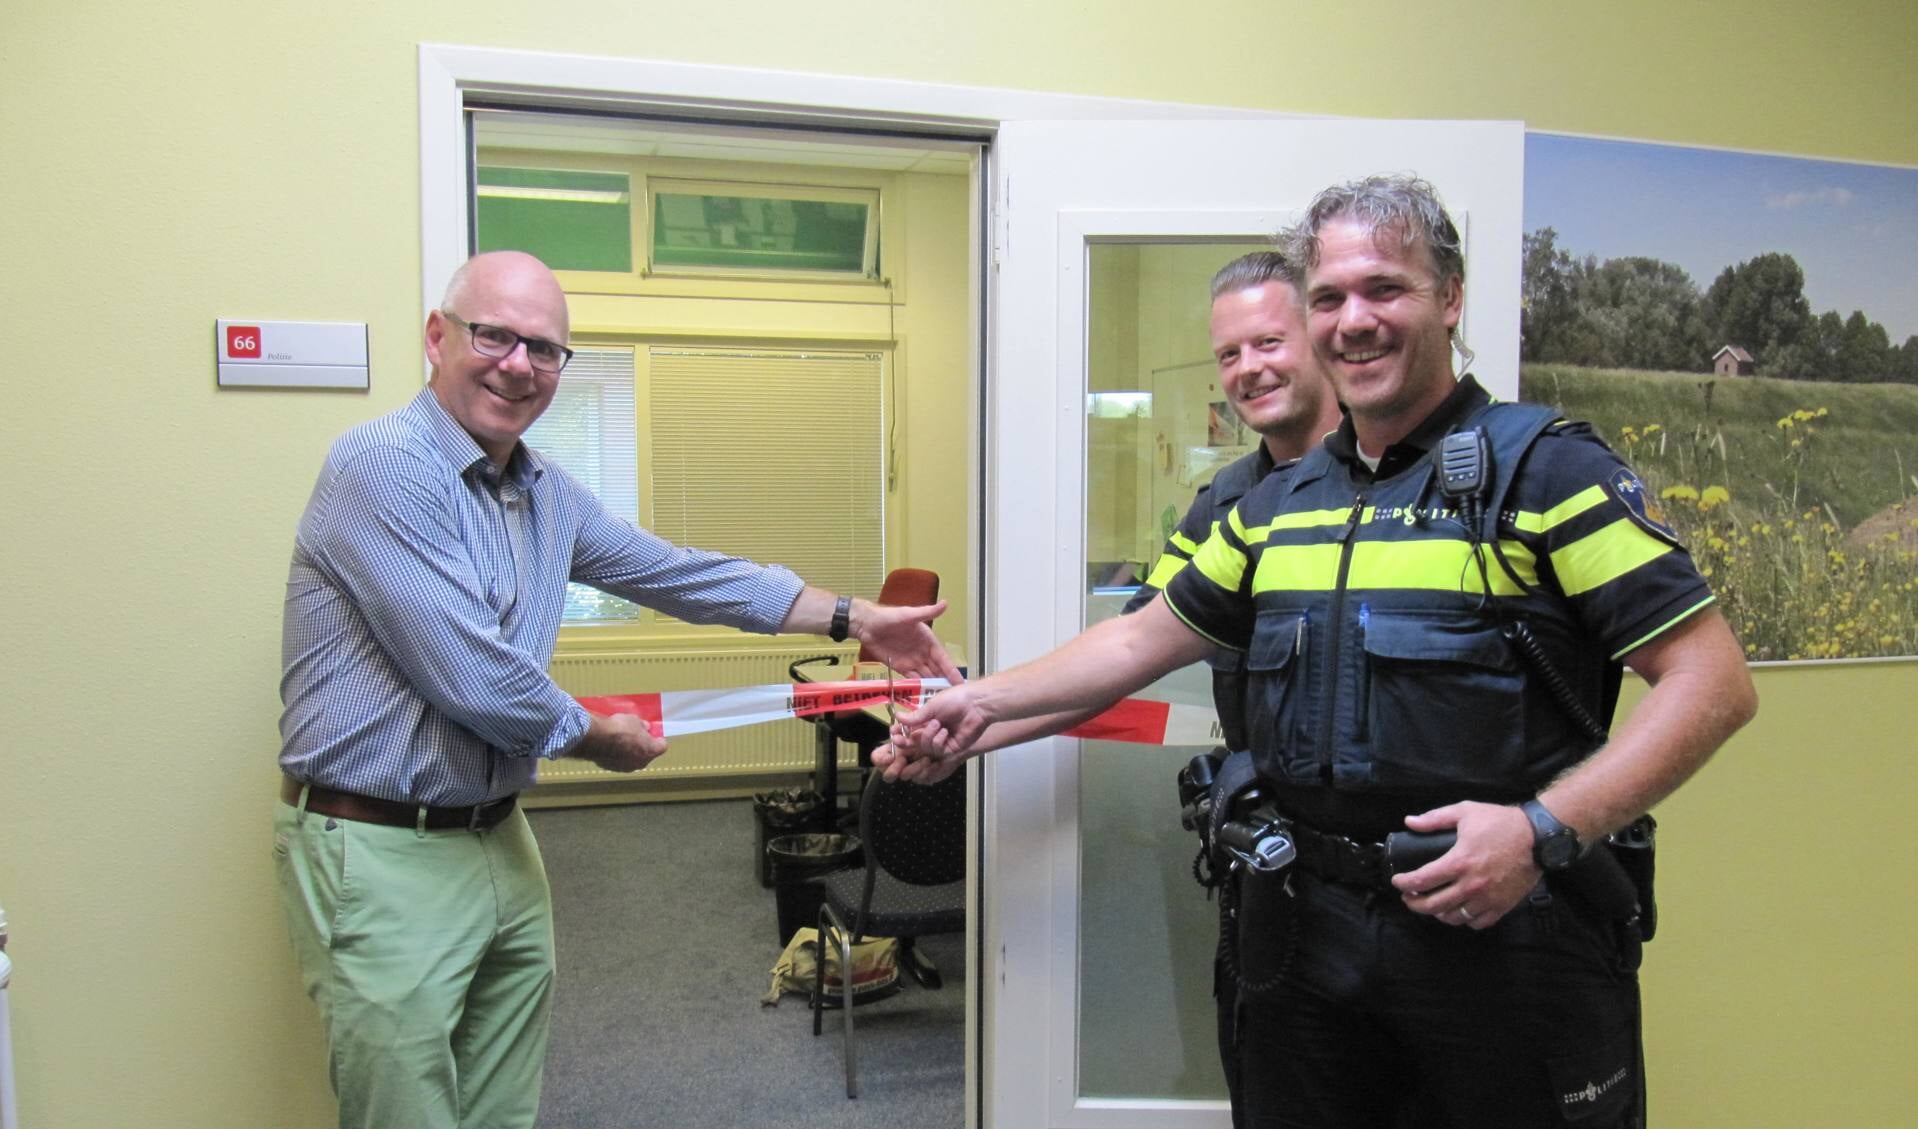 Burgemeester Carol van Eert (links) opent het politiesteunpunt samen met wijkagenten Freek Kleinschiphorst en Martijn Goppel.